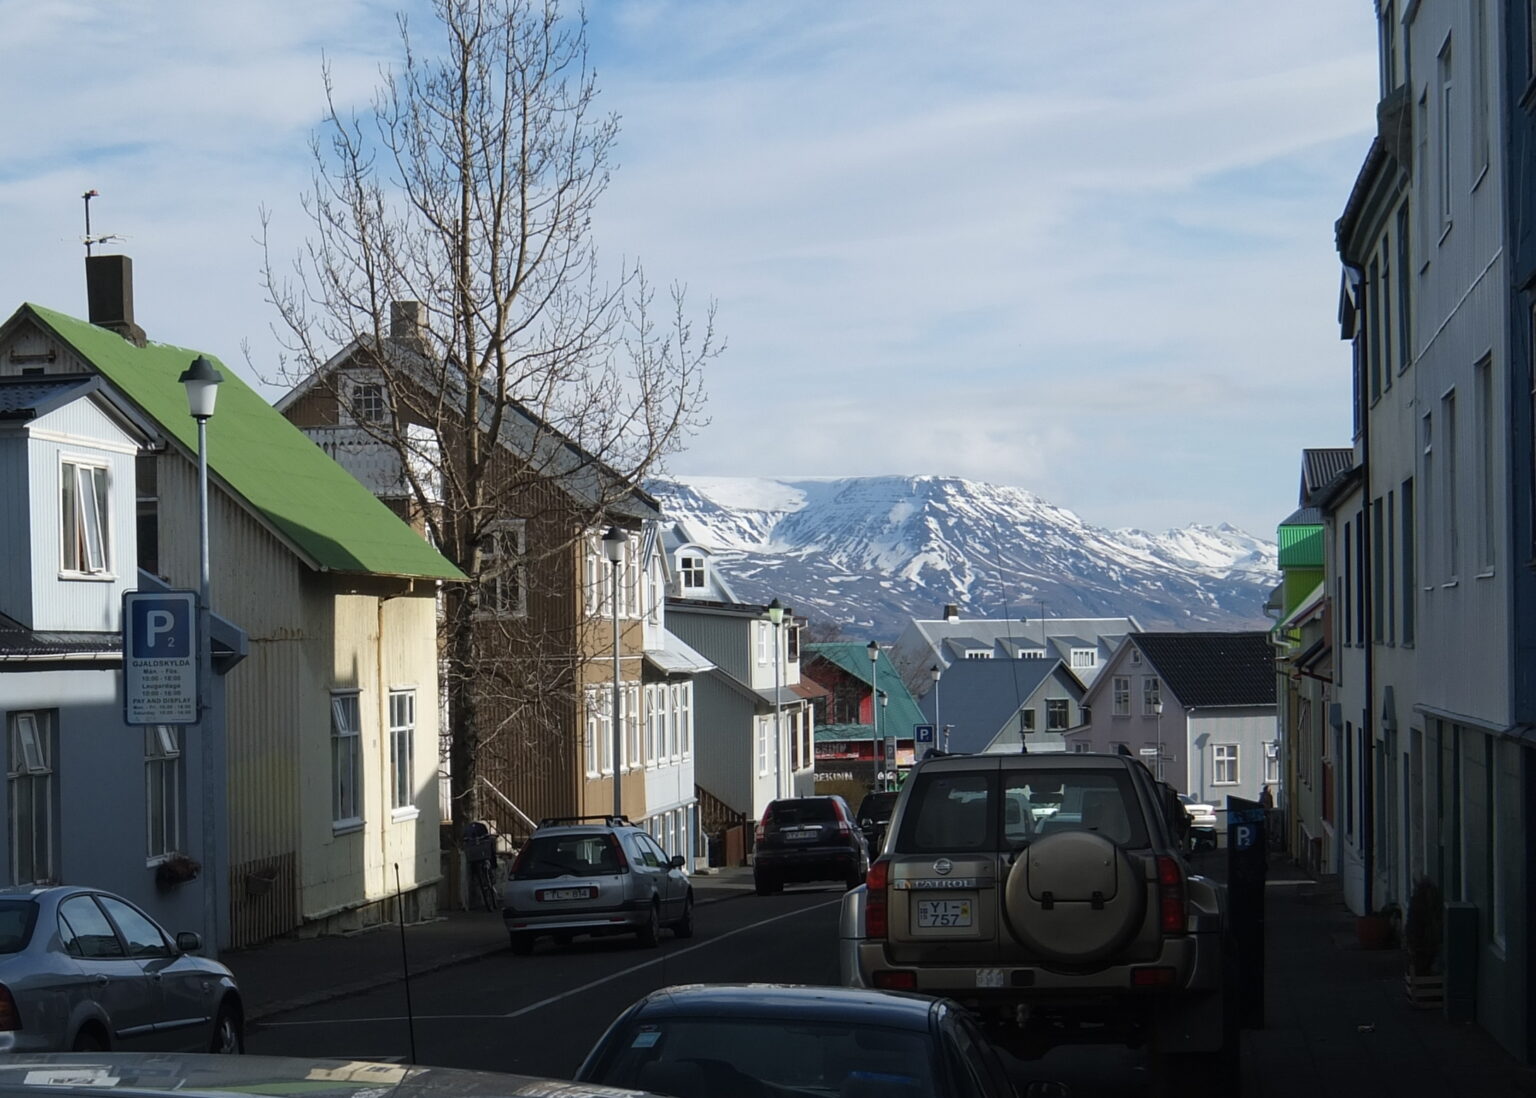 Walking through Reykjavik